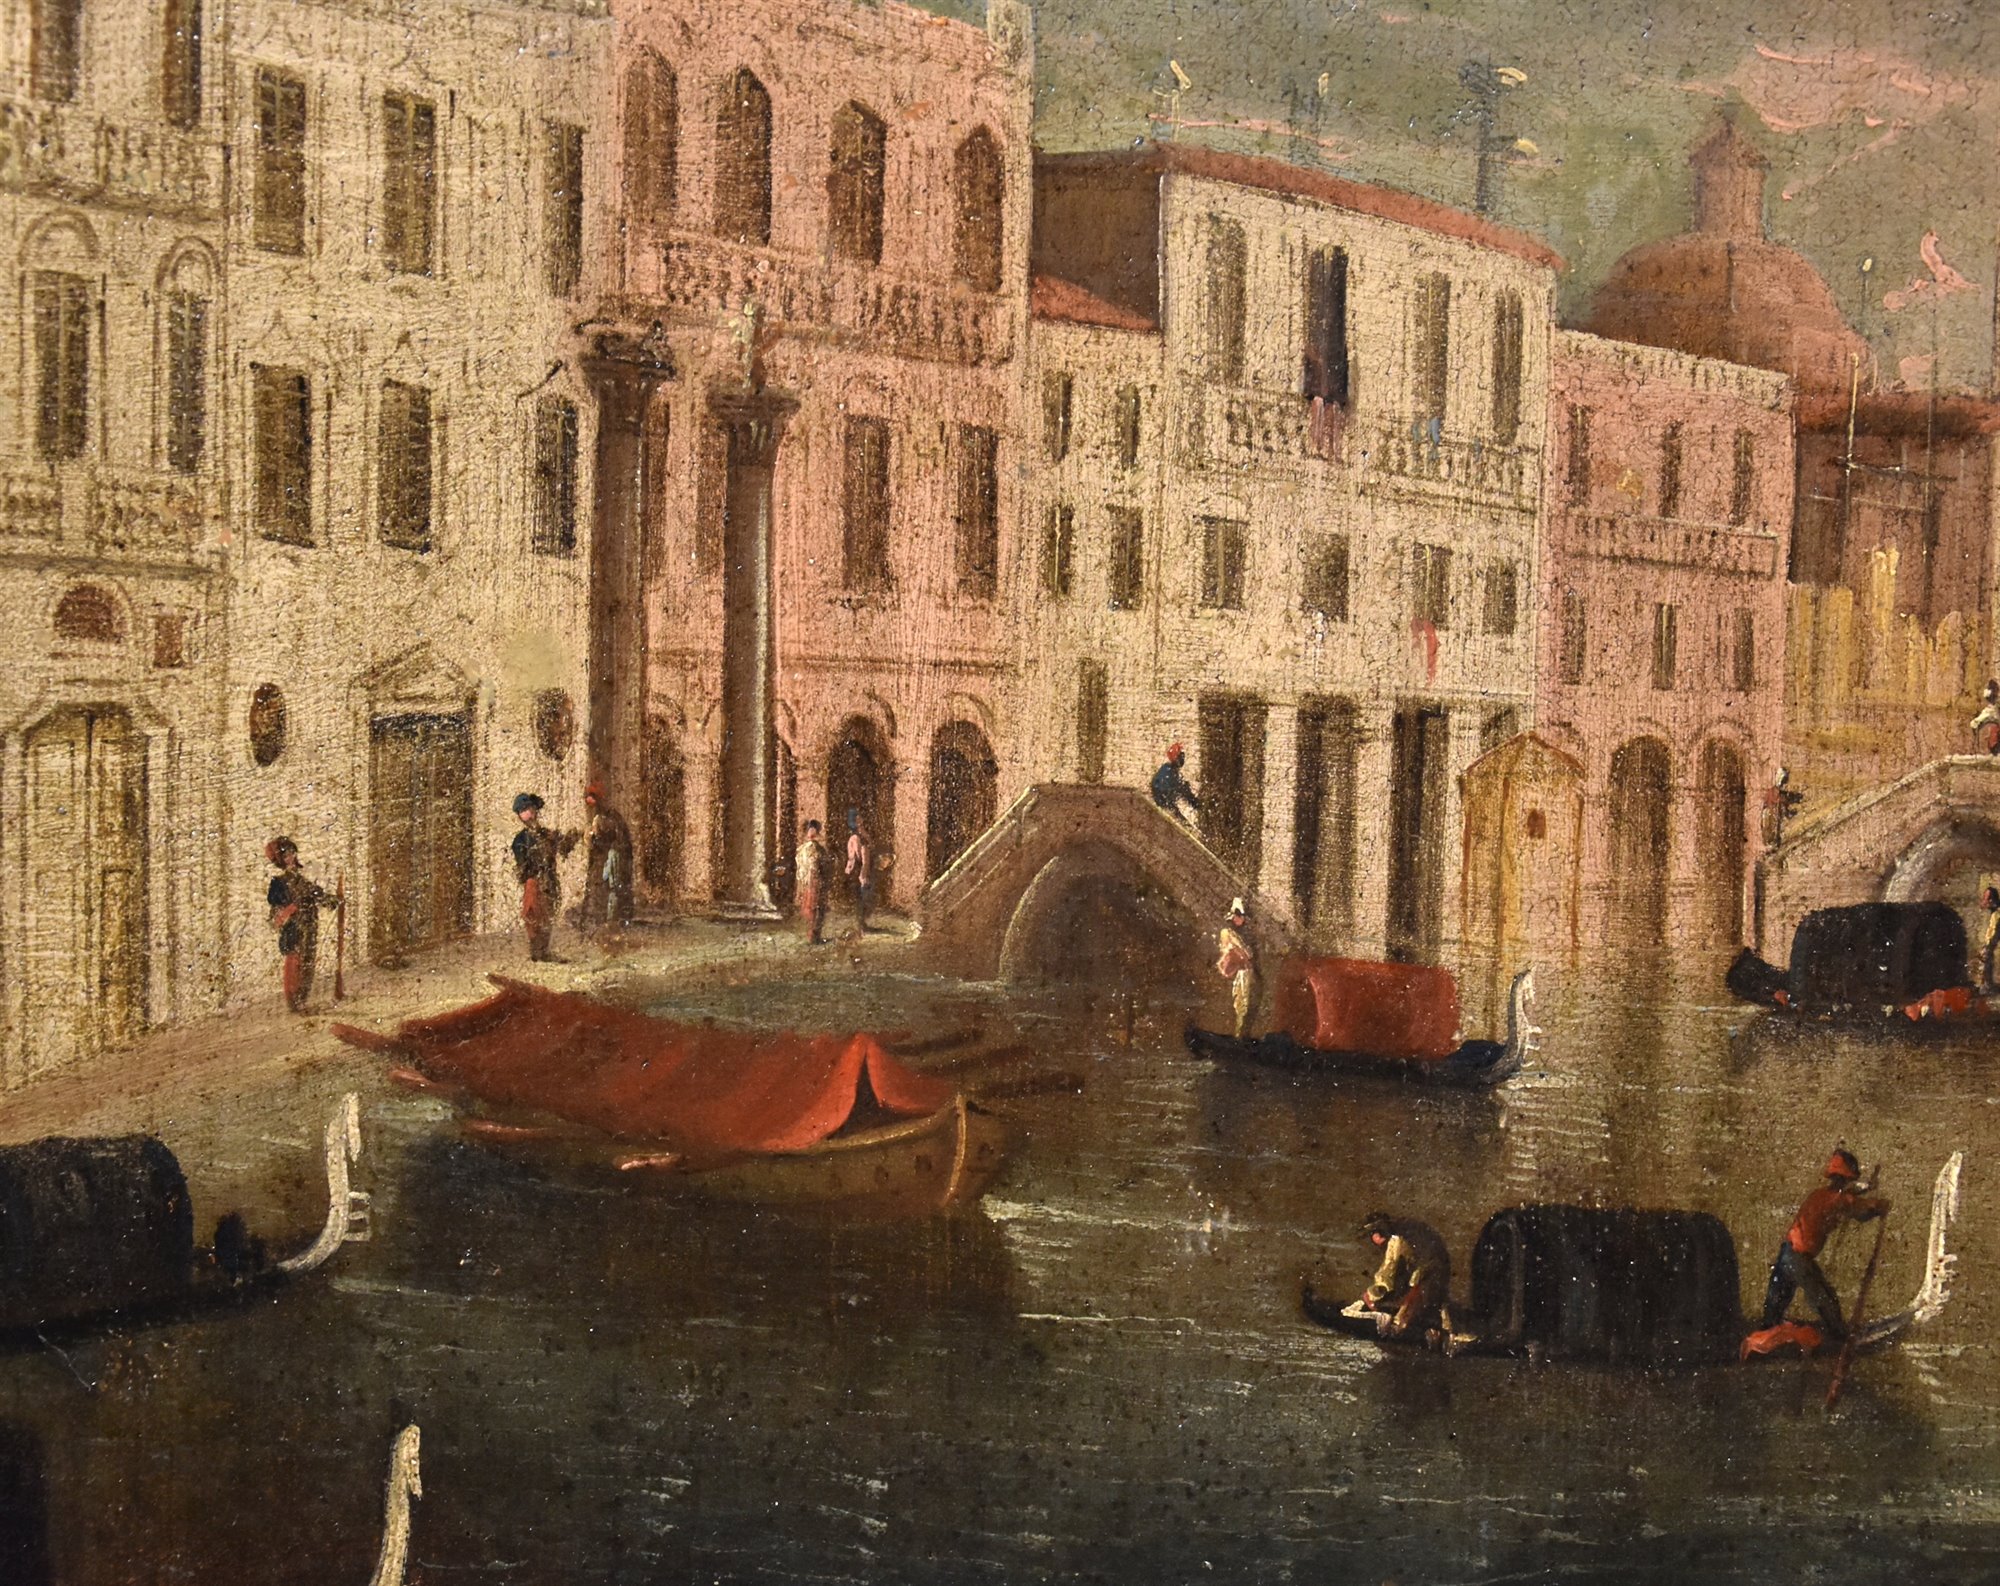 Veduta di Venezia con uno scorcio con l’inizio del Canal Grande